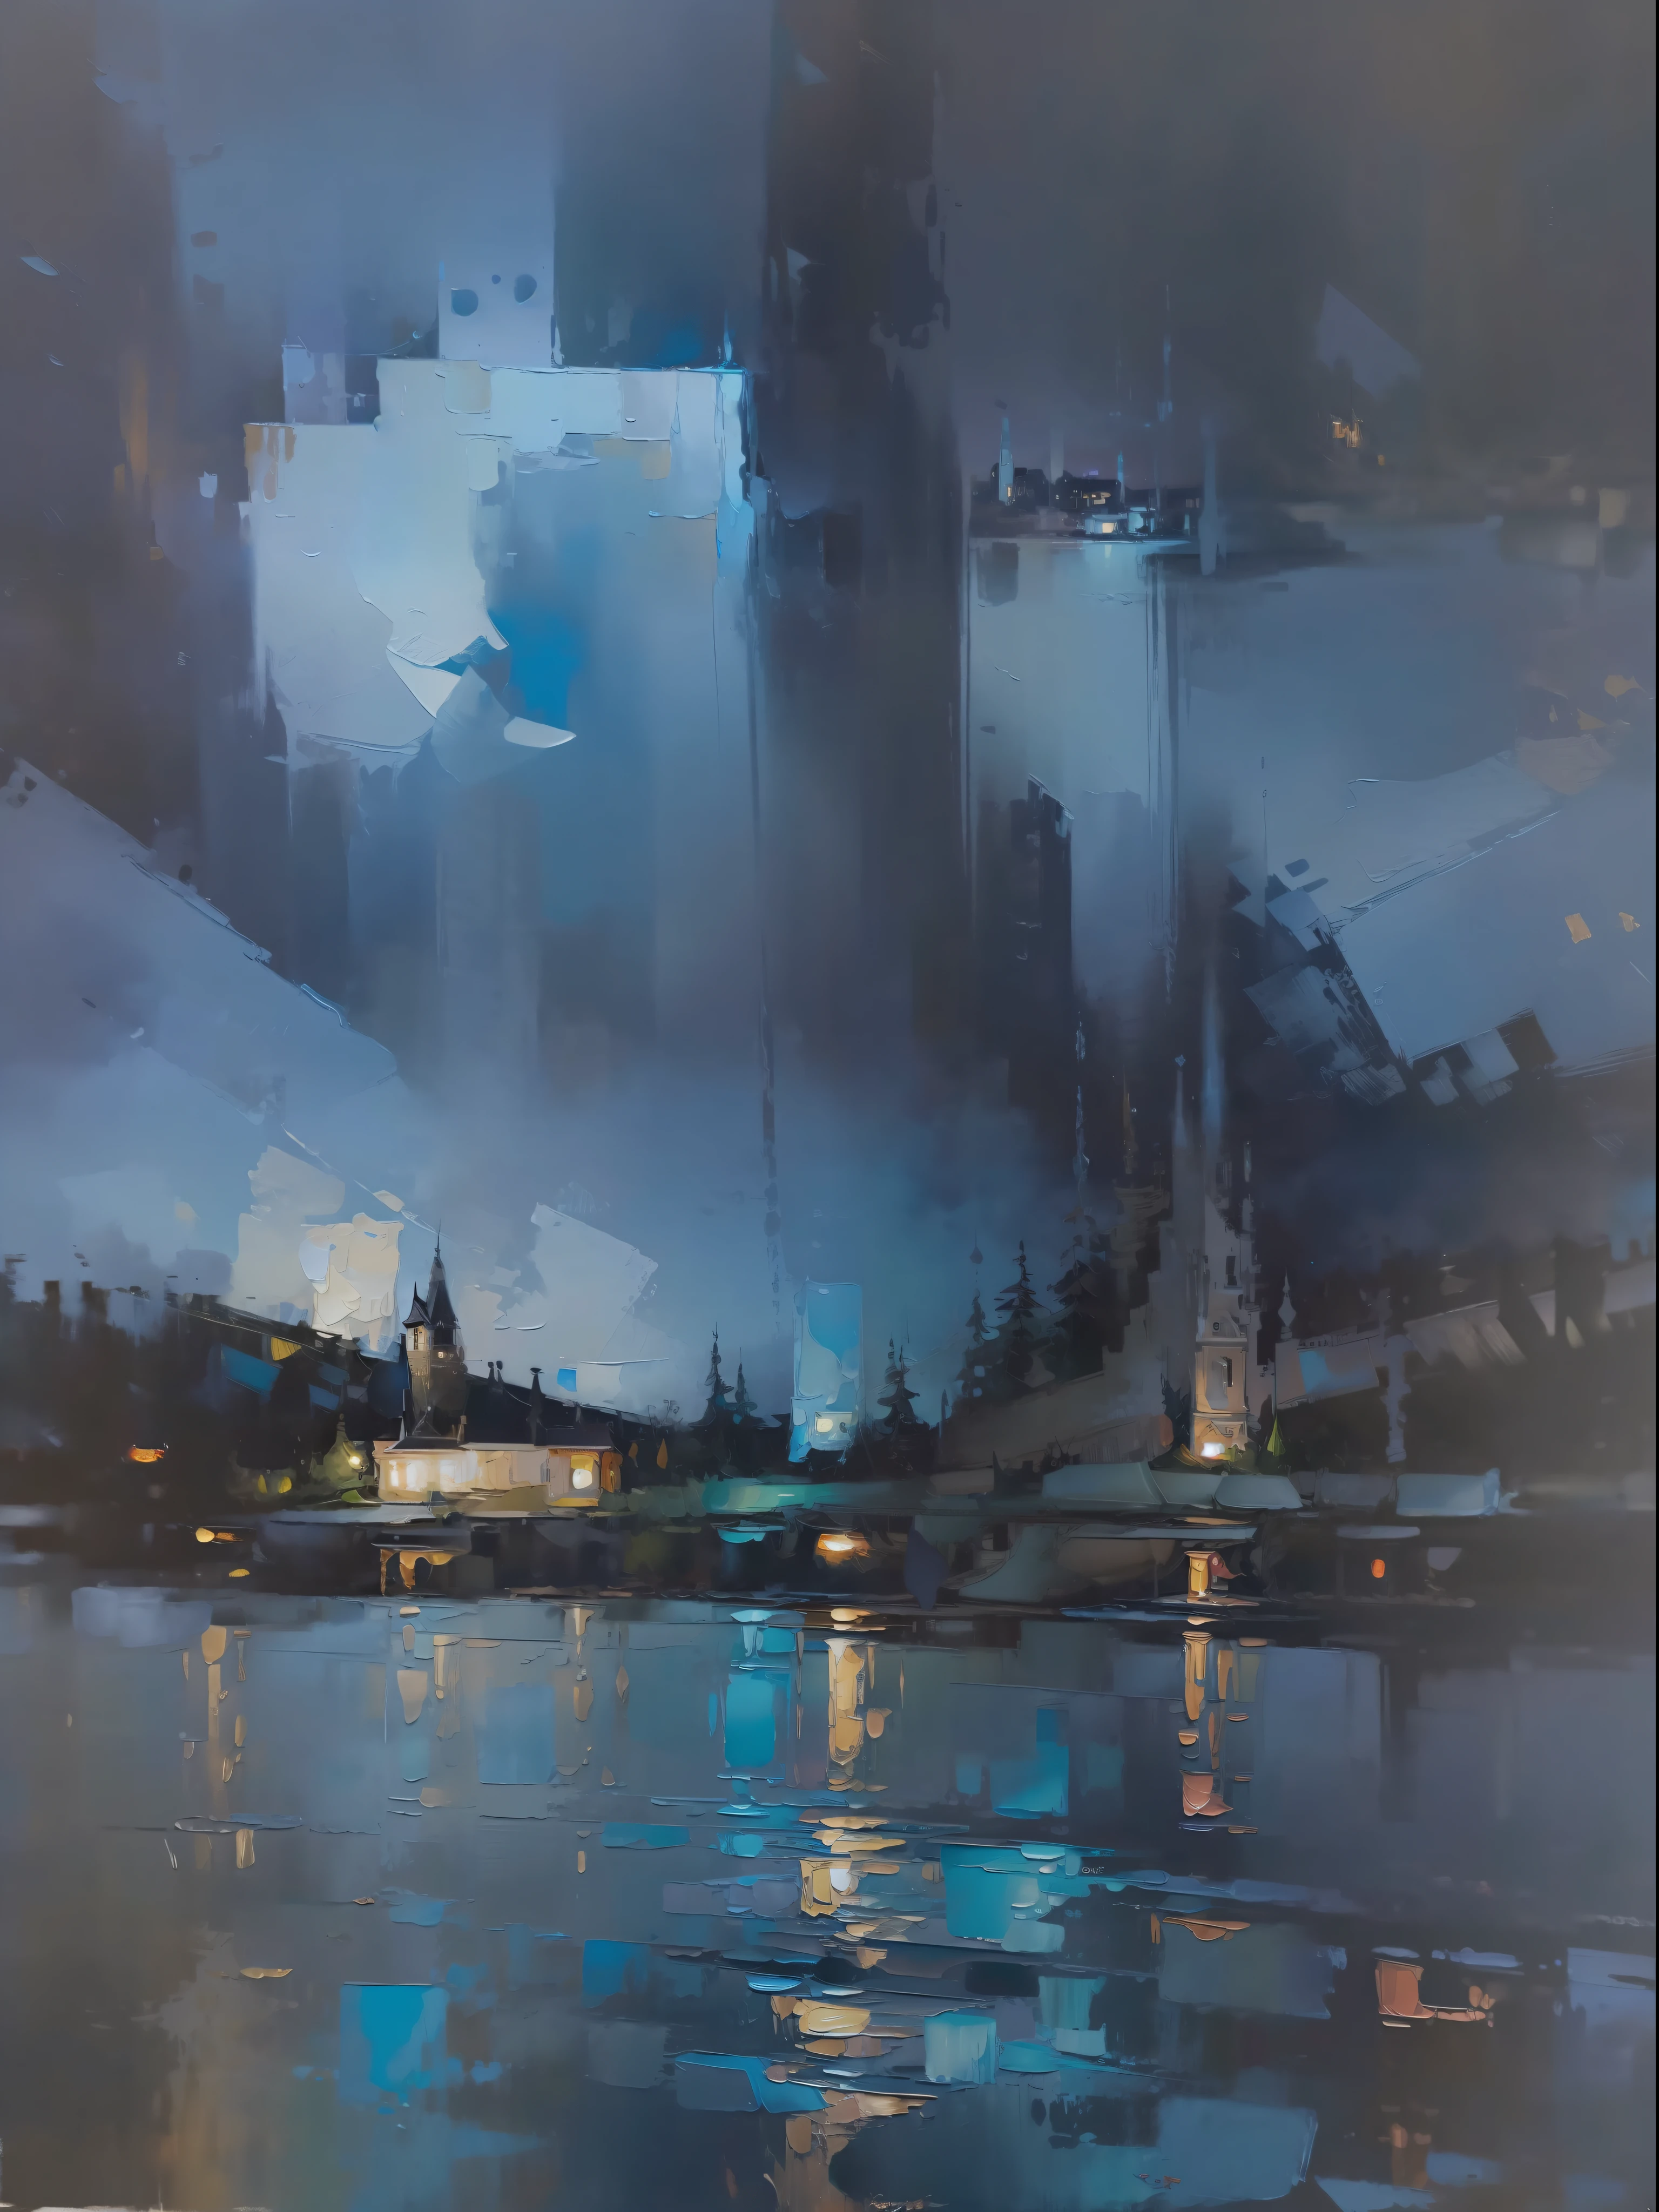 一幅油画，颜色很漂亮，暗黑星空下的抽象油画效果。这幅画描绘的是夜晚的城堡，沿着蜿蜒的小路，一条小河蜿蜒流过。